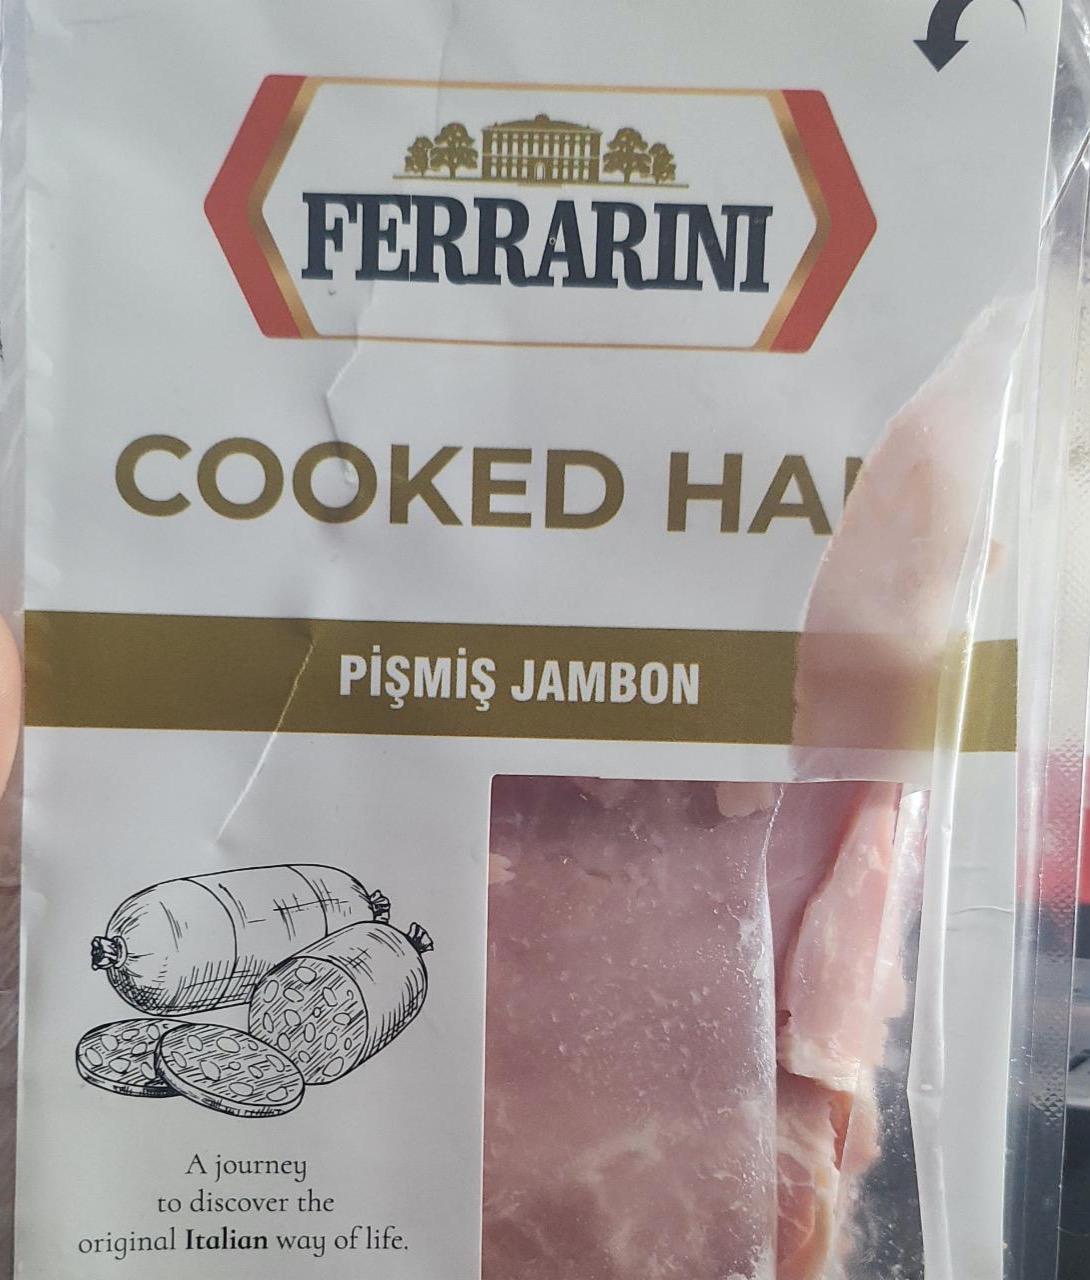 Fotografie - Cooked Ham Ferrarini